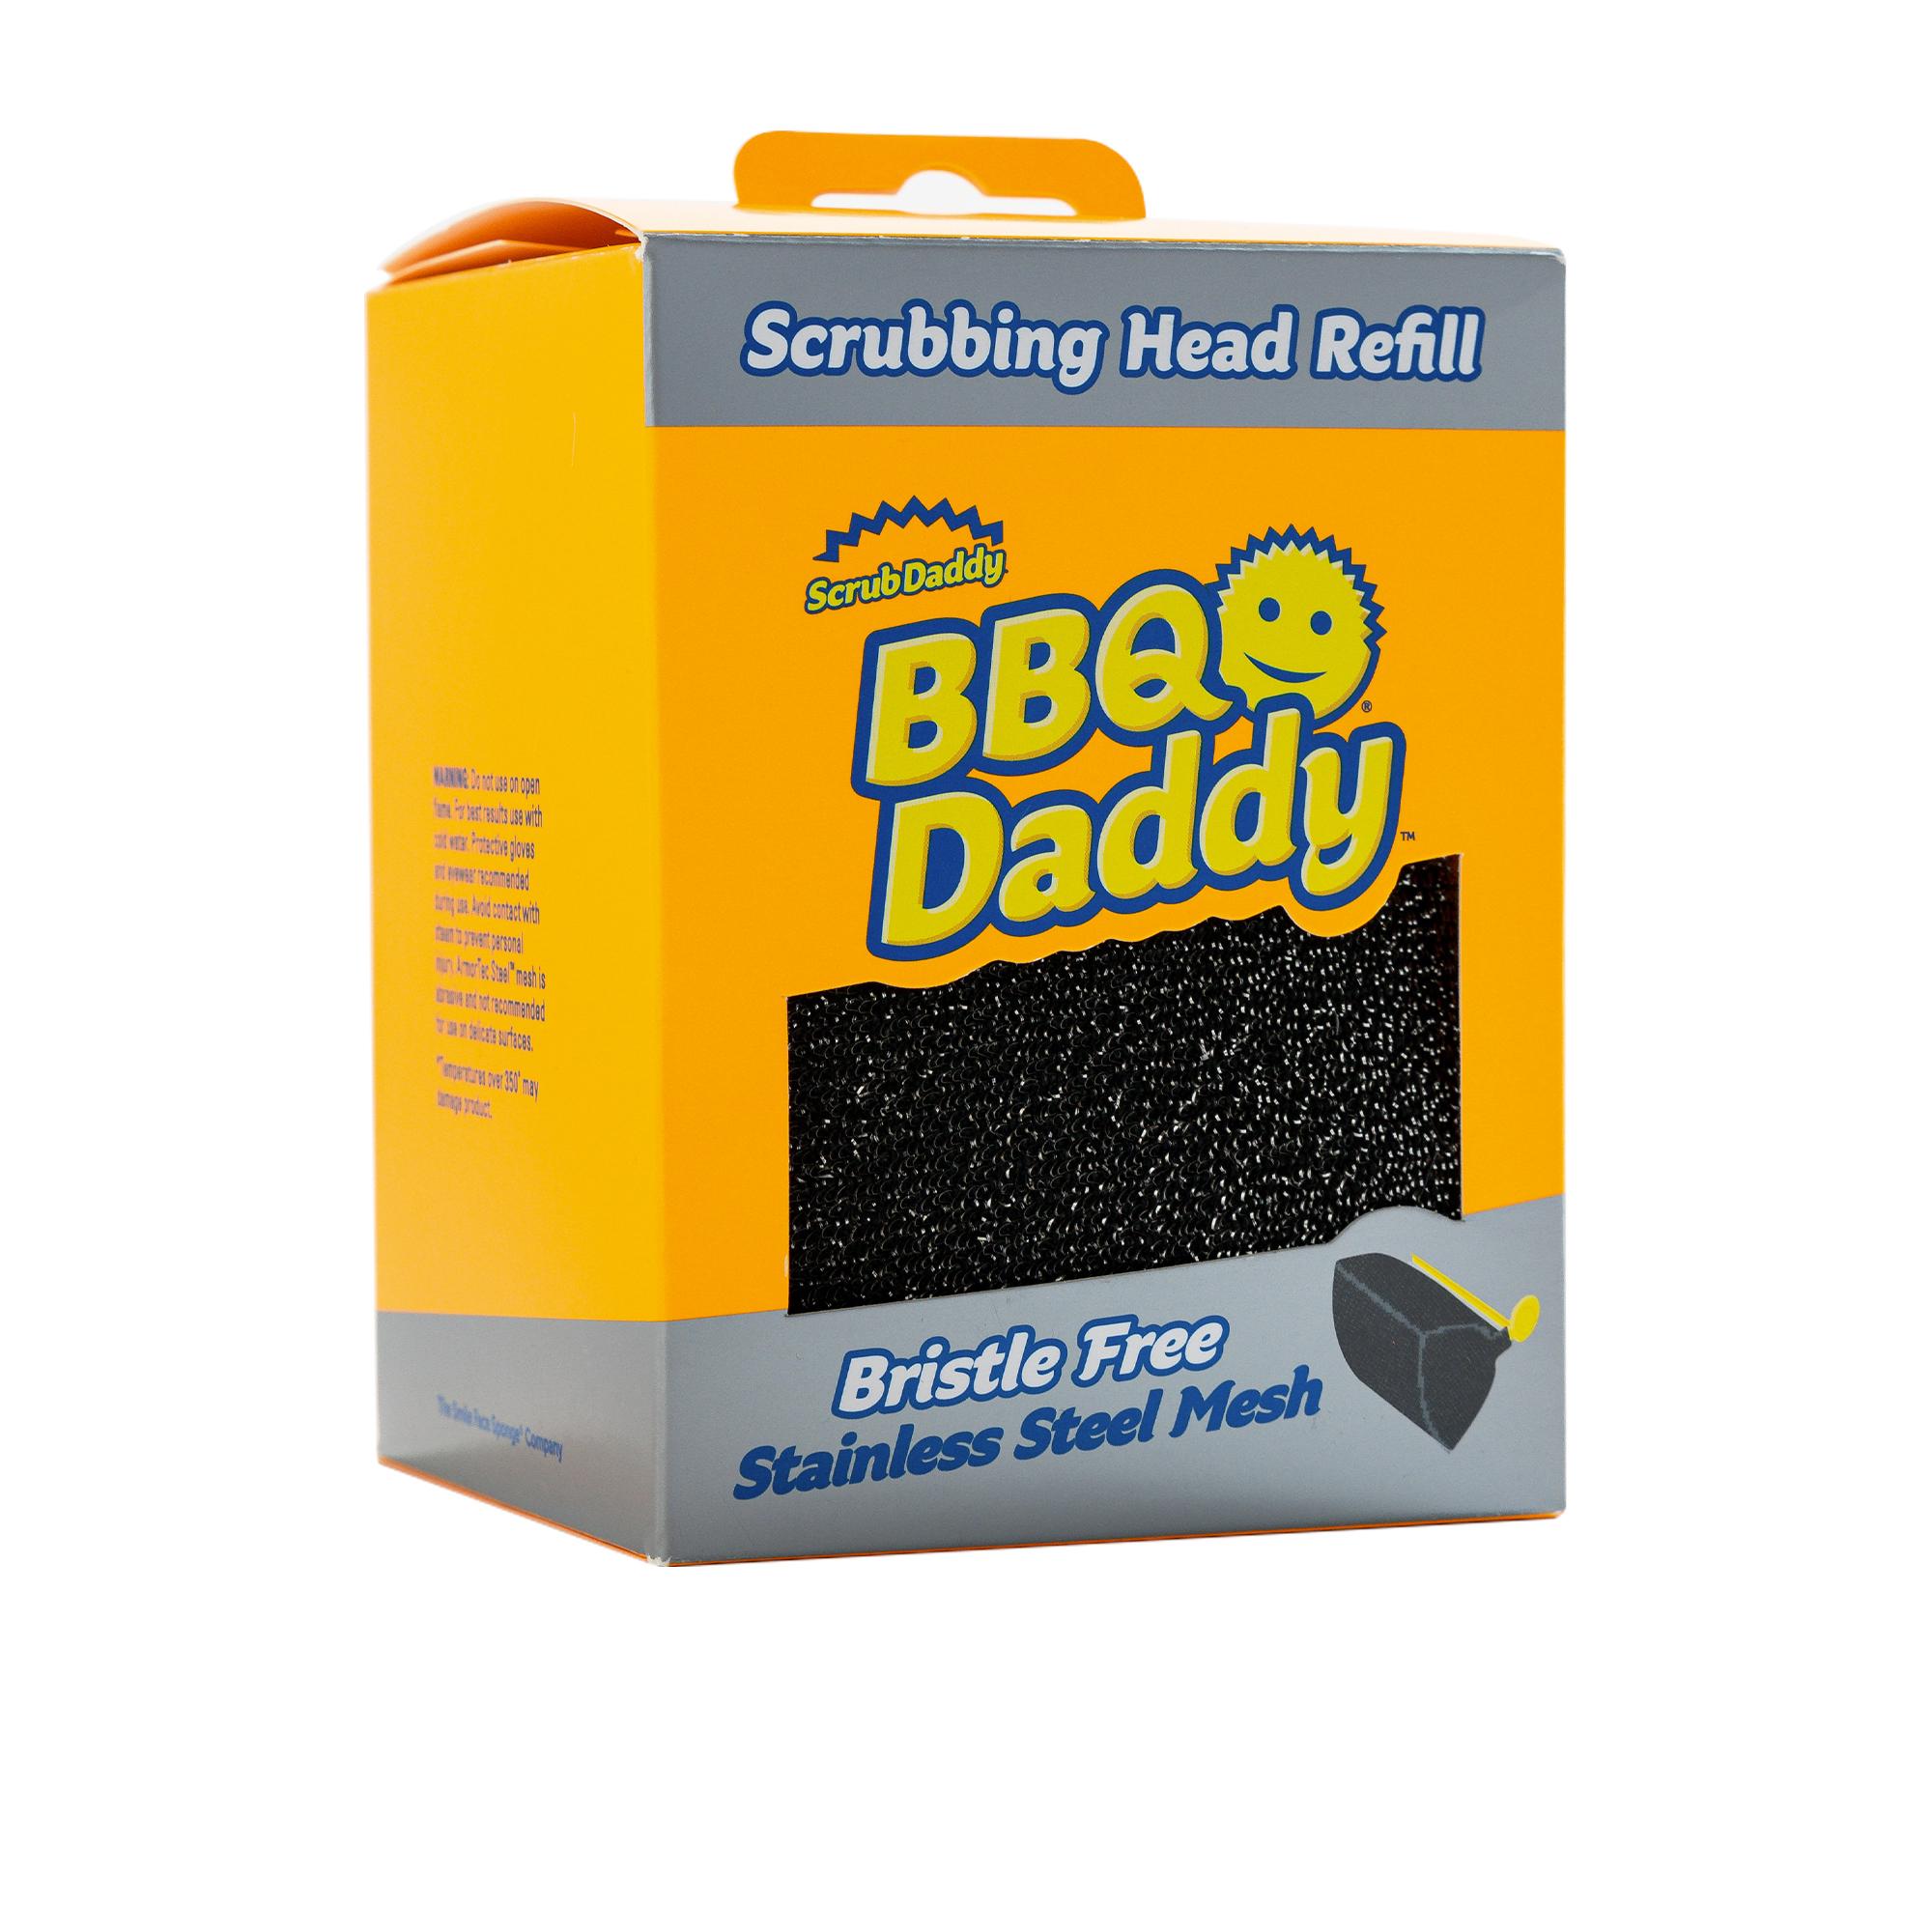 Scrub Daddy - BBQ Daddy Scrubbing Head Refill Image 5